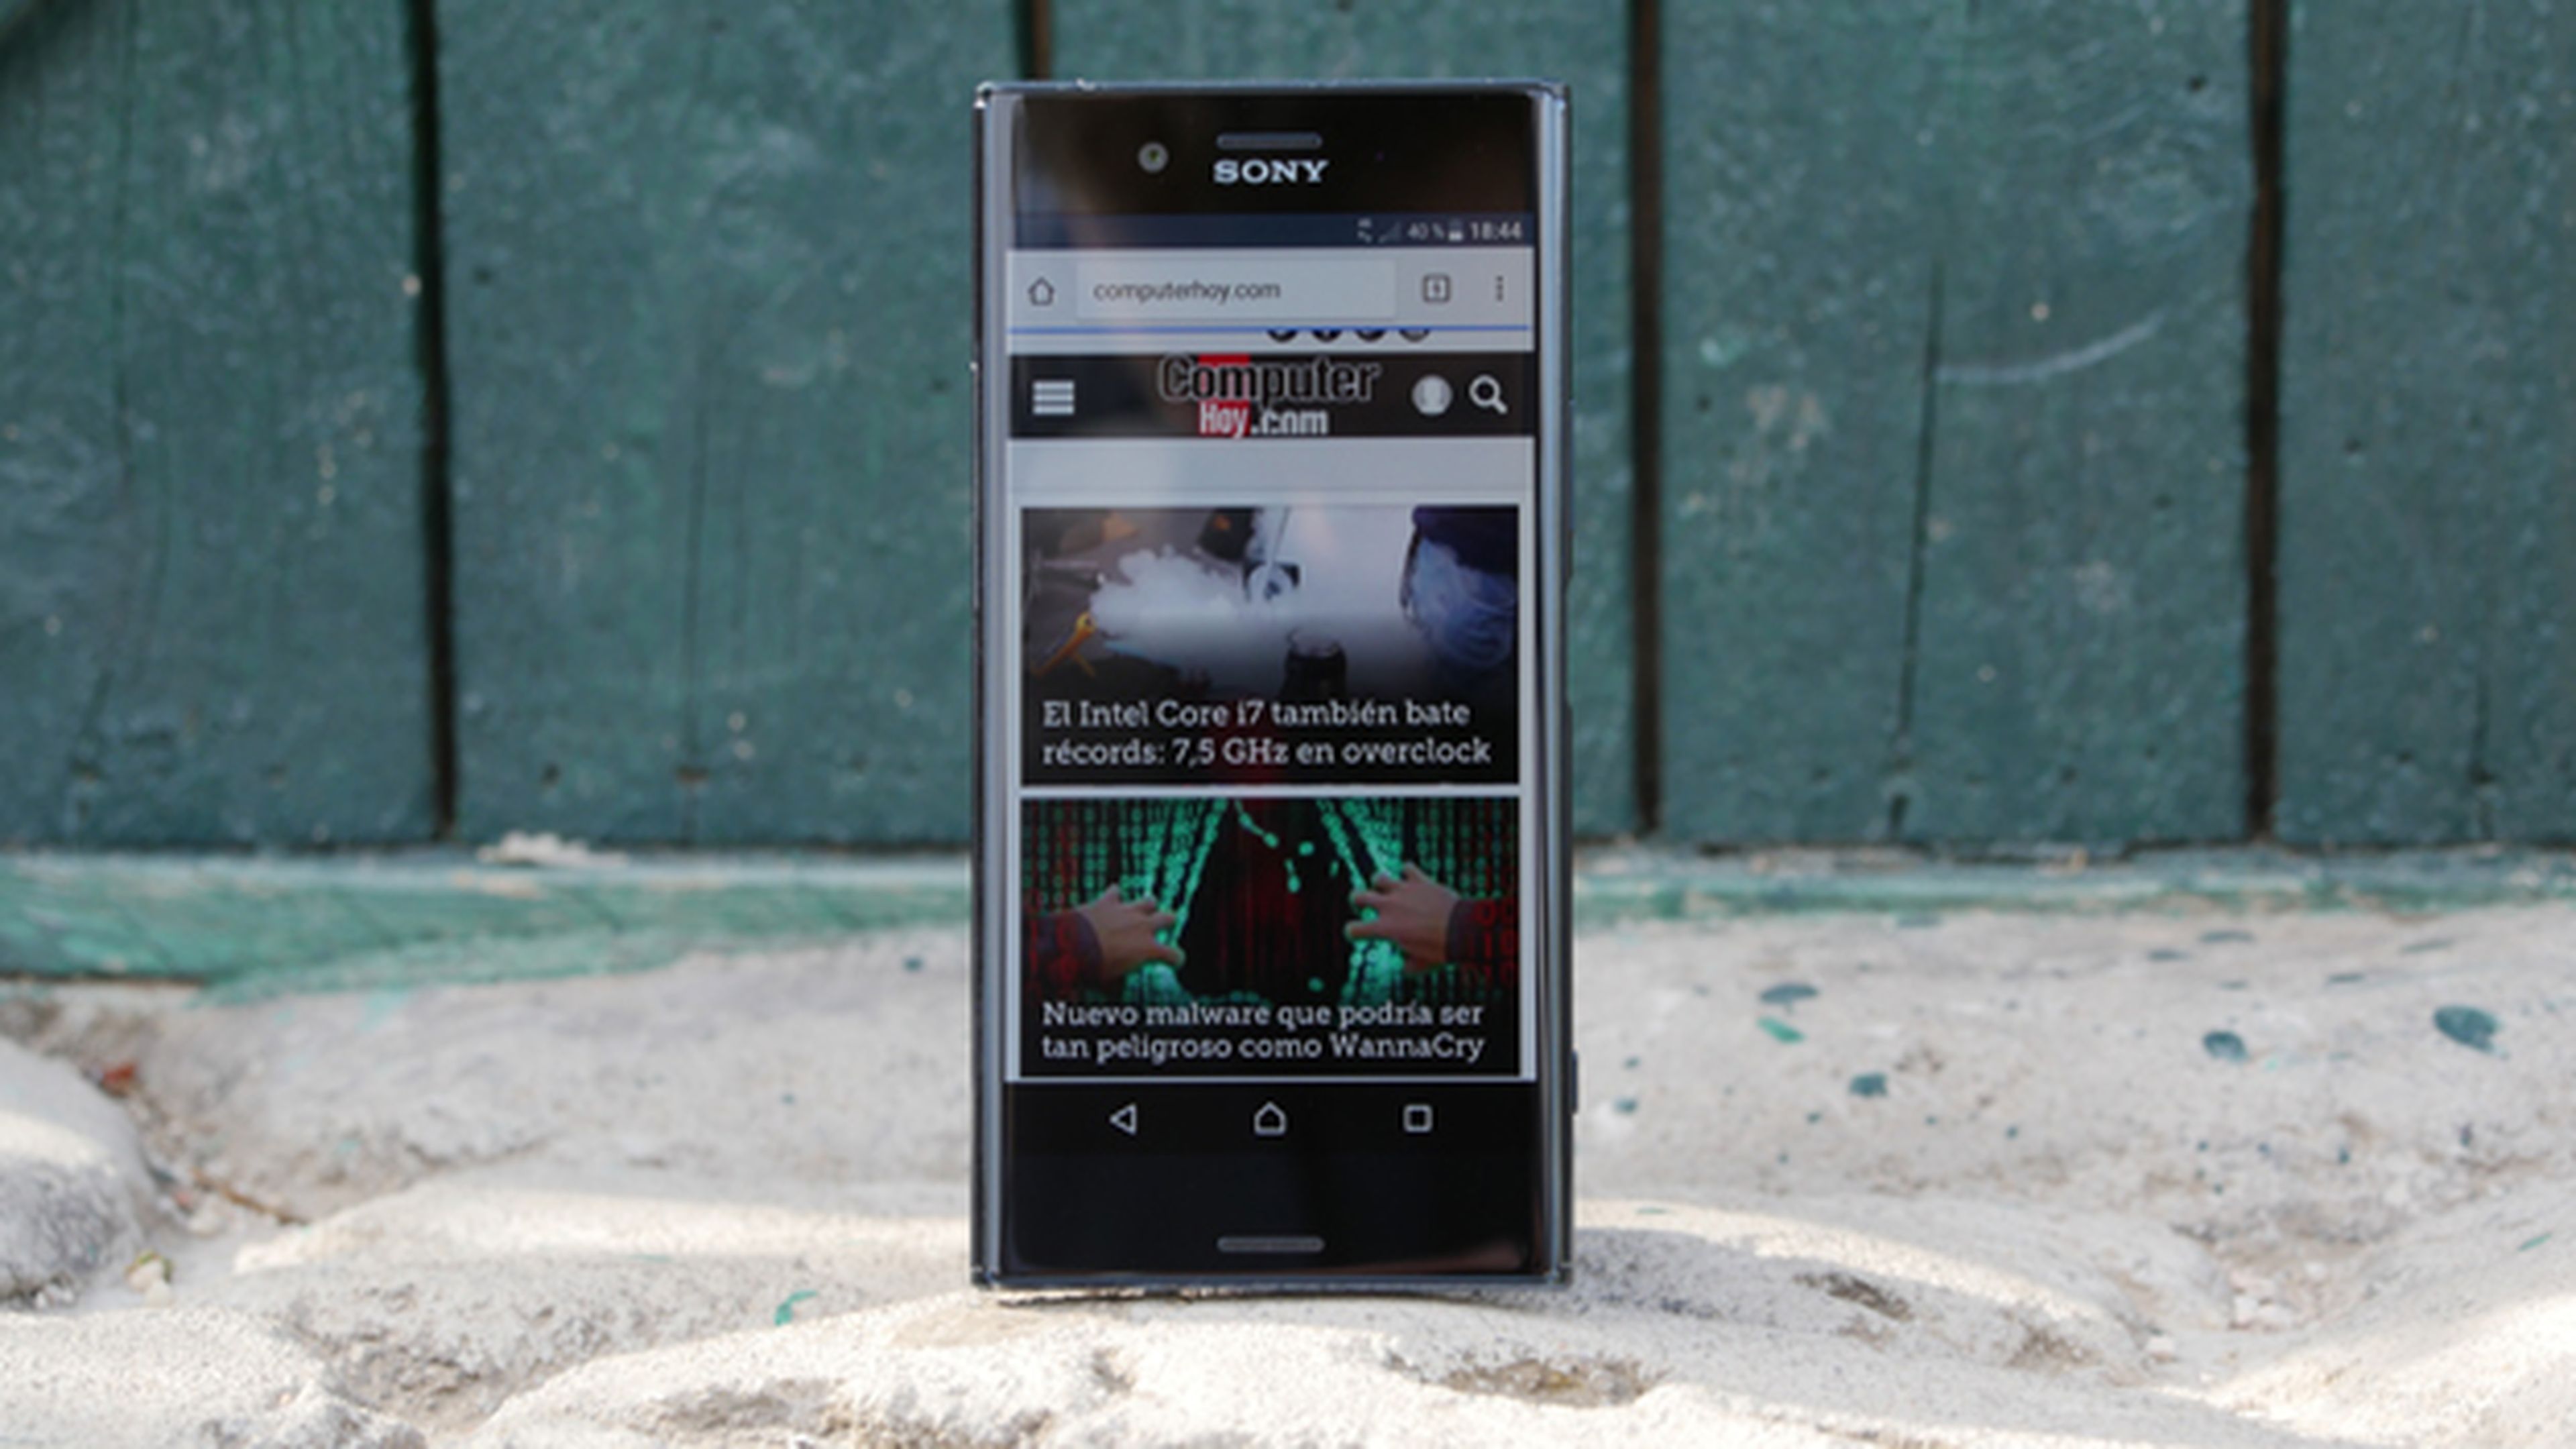 El Sony Xperia XZ Premium es uno de los pocos móviles en tener una pantalla 4K